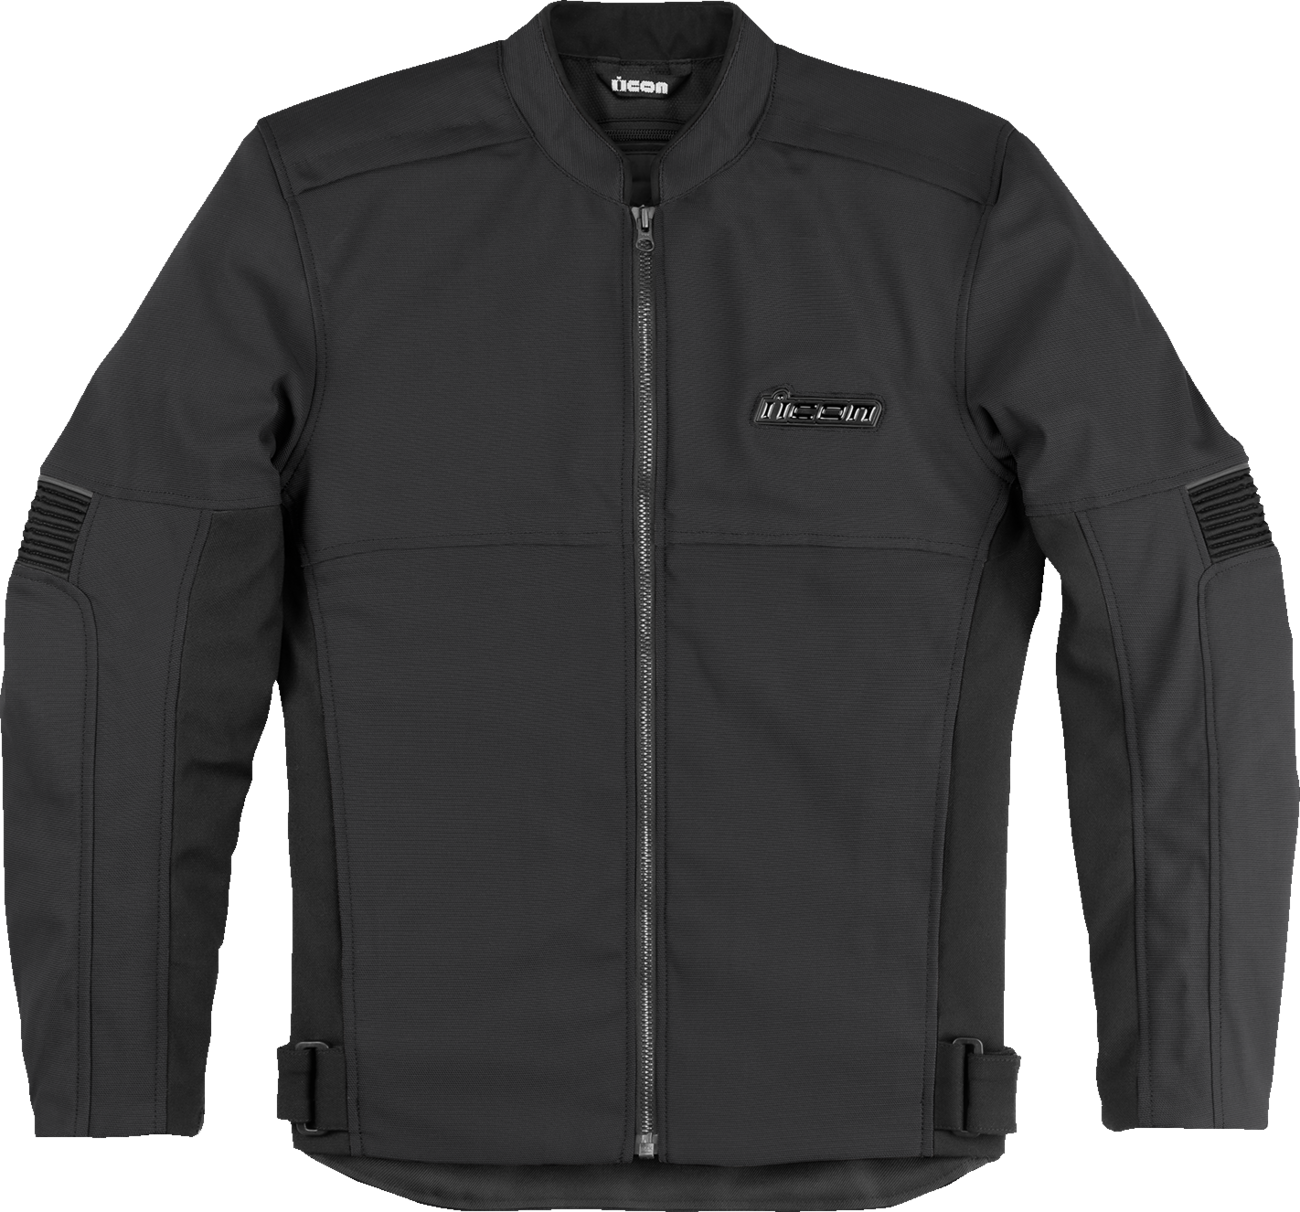 ICON Slabtown Jacket - Black - Medium 2820-6248